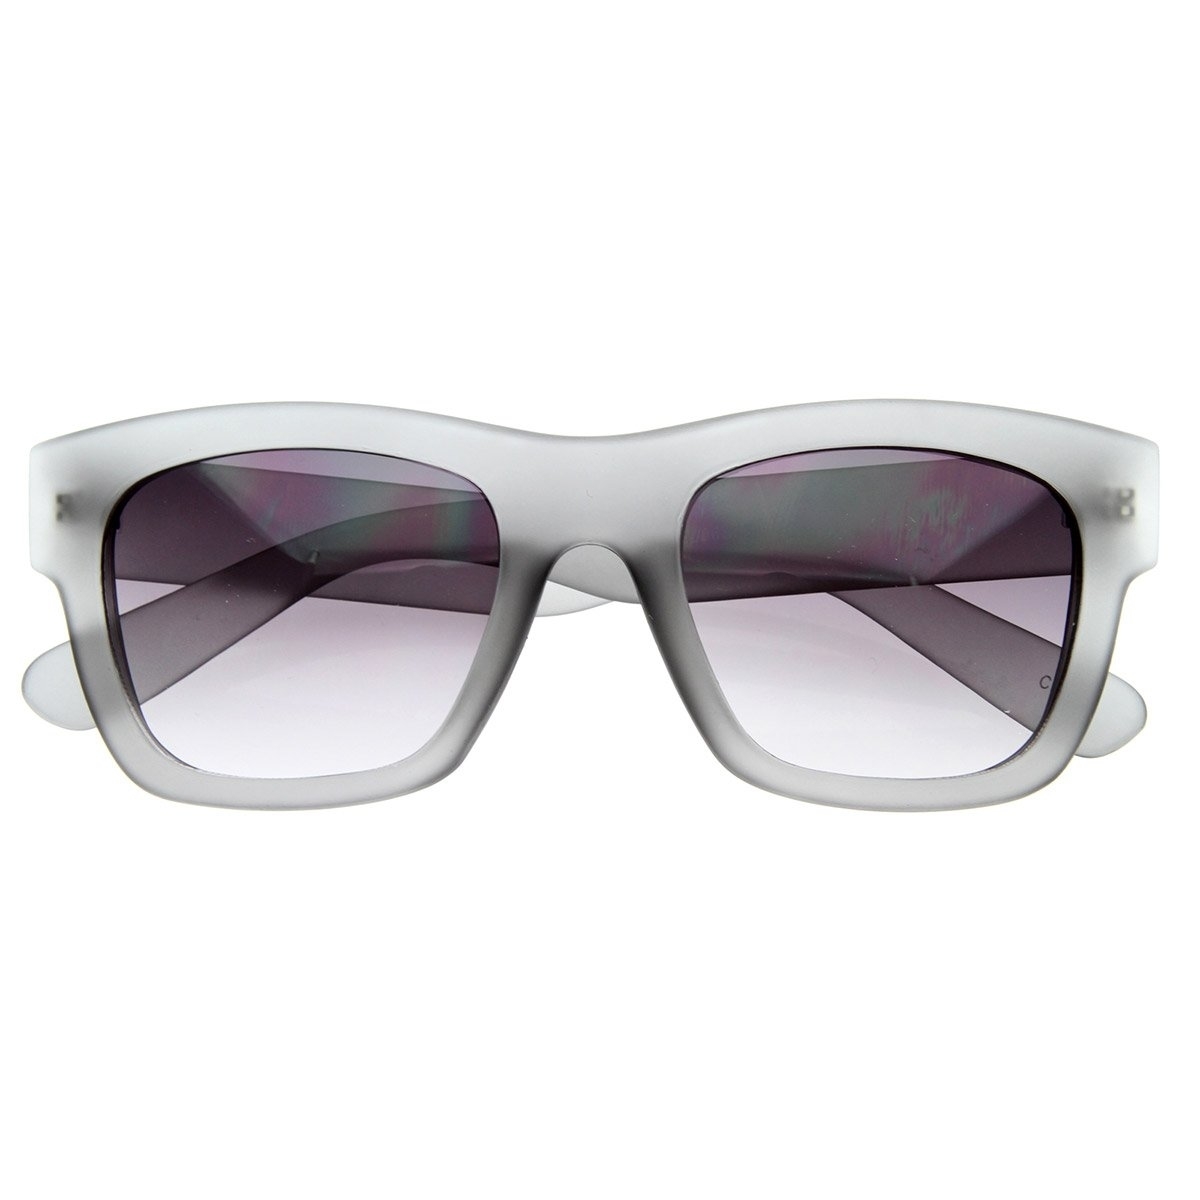 Designer Inspired Hispter Fashion Soft Finish Bold Horn Rimmed Sunglasses - Tortoise